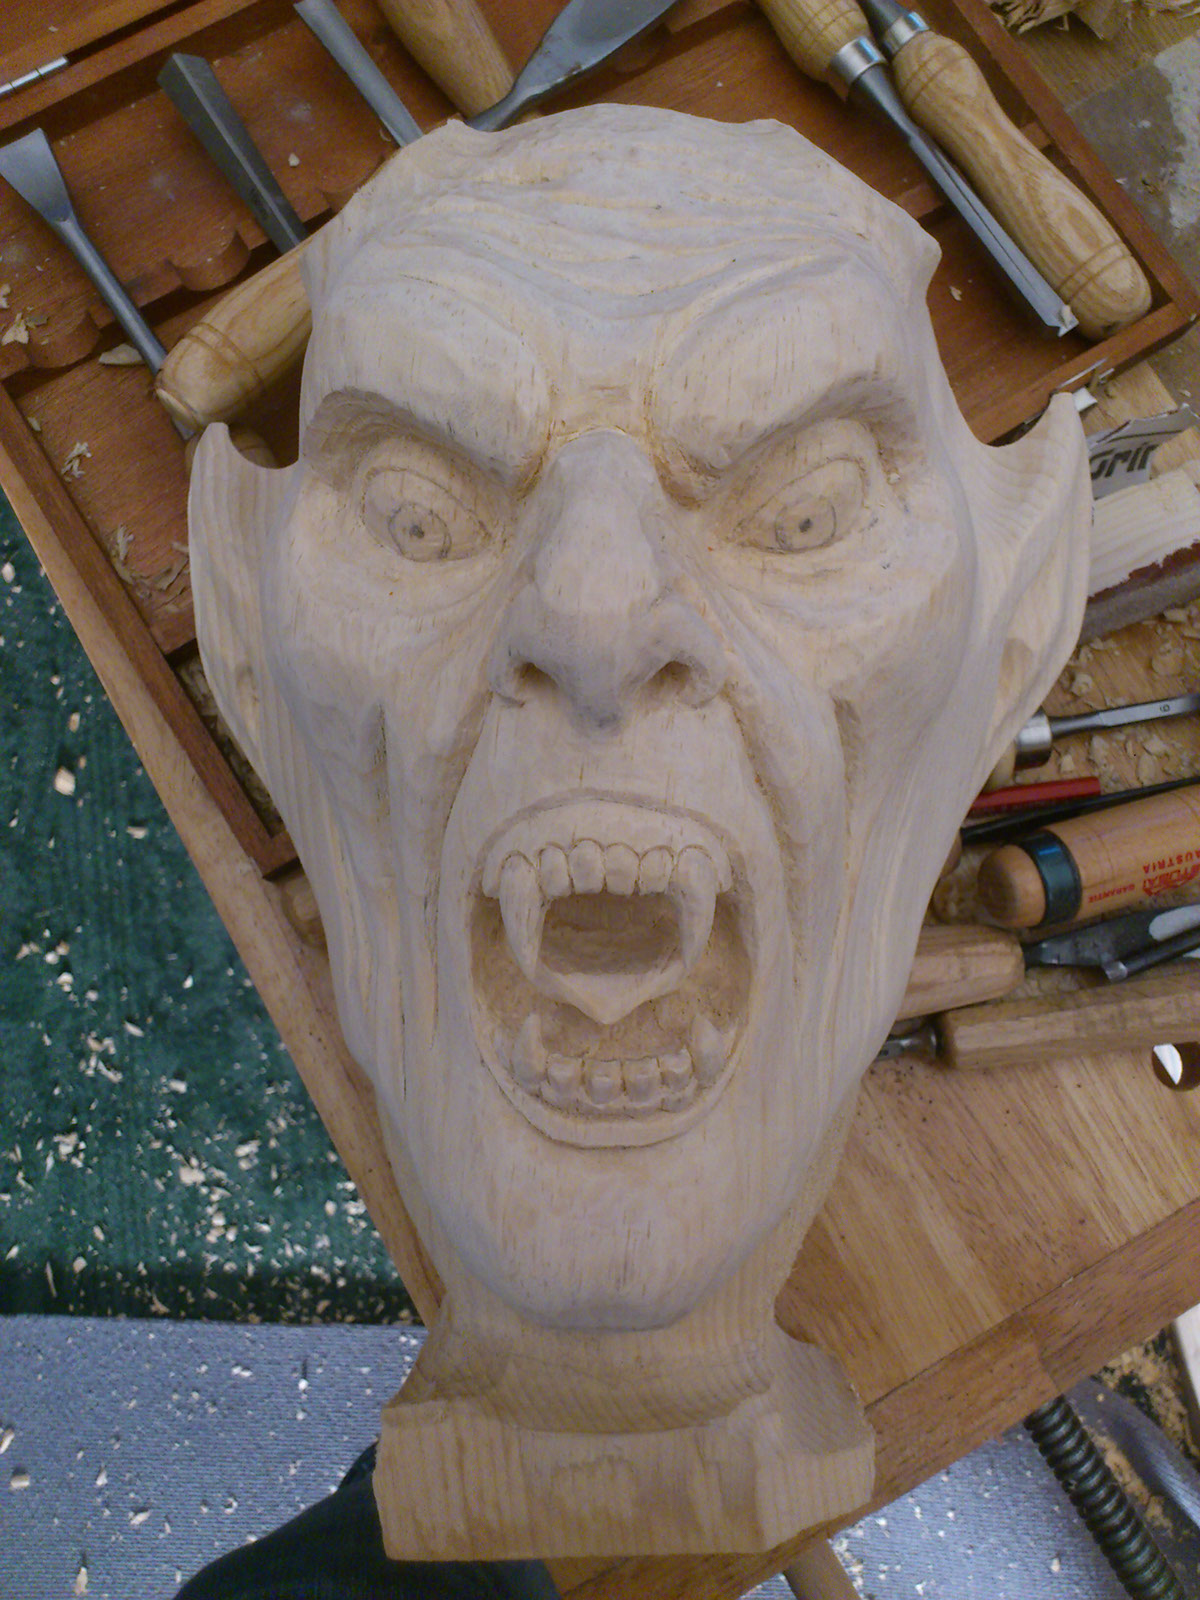 mask Make Up handmade Krampus devil costume craft Work  carving wood fear art design